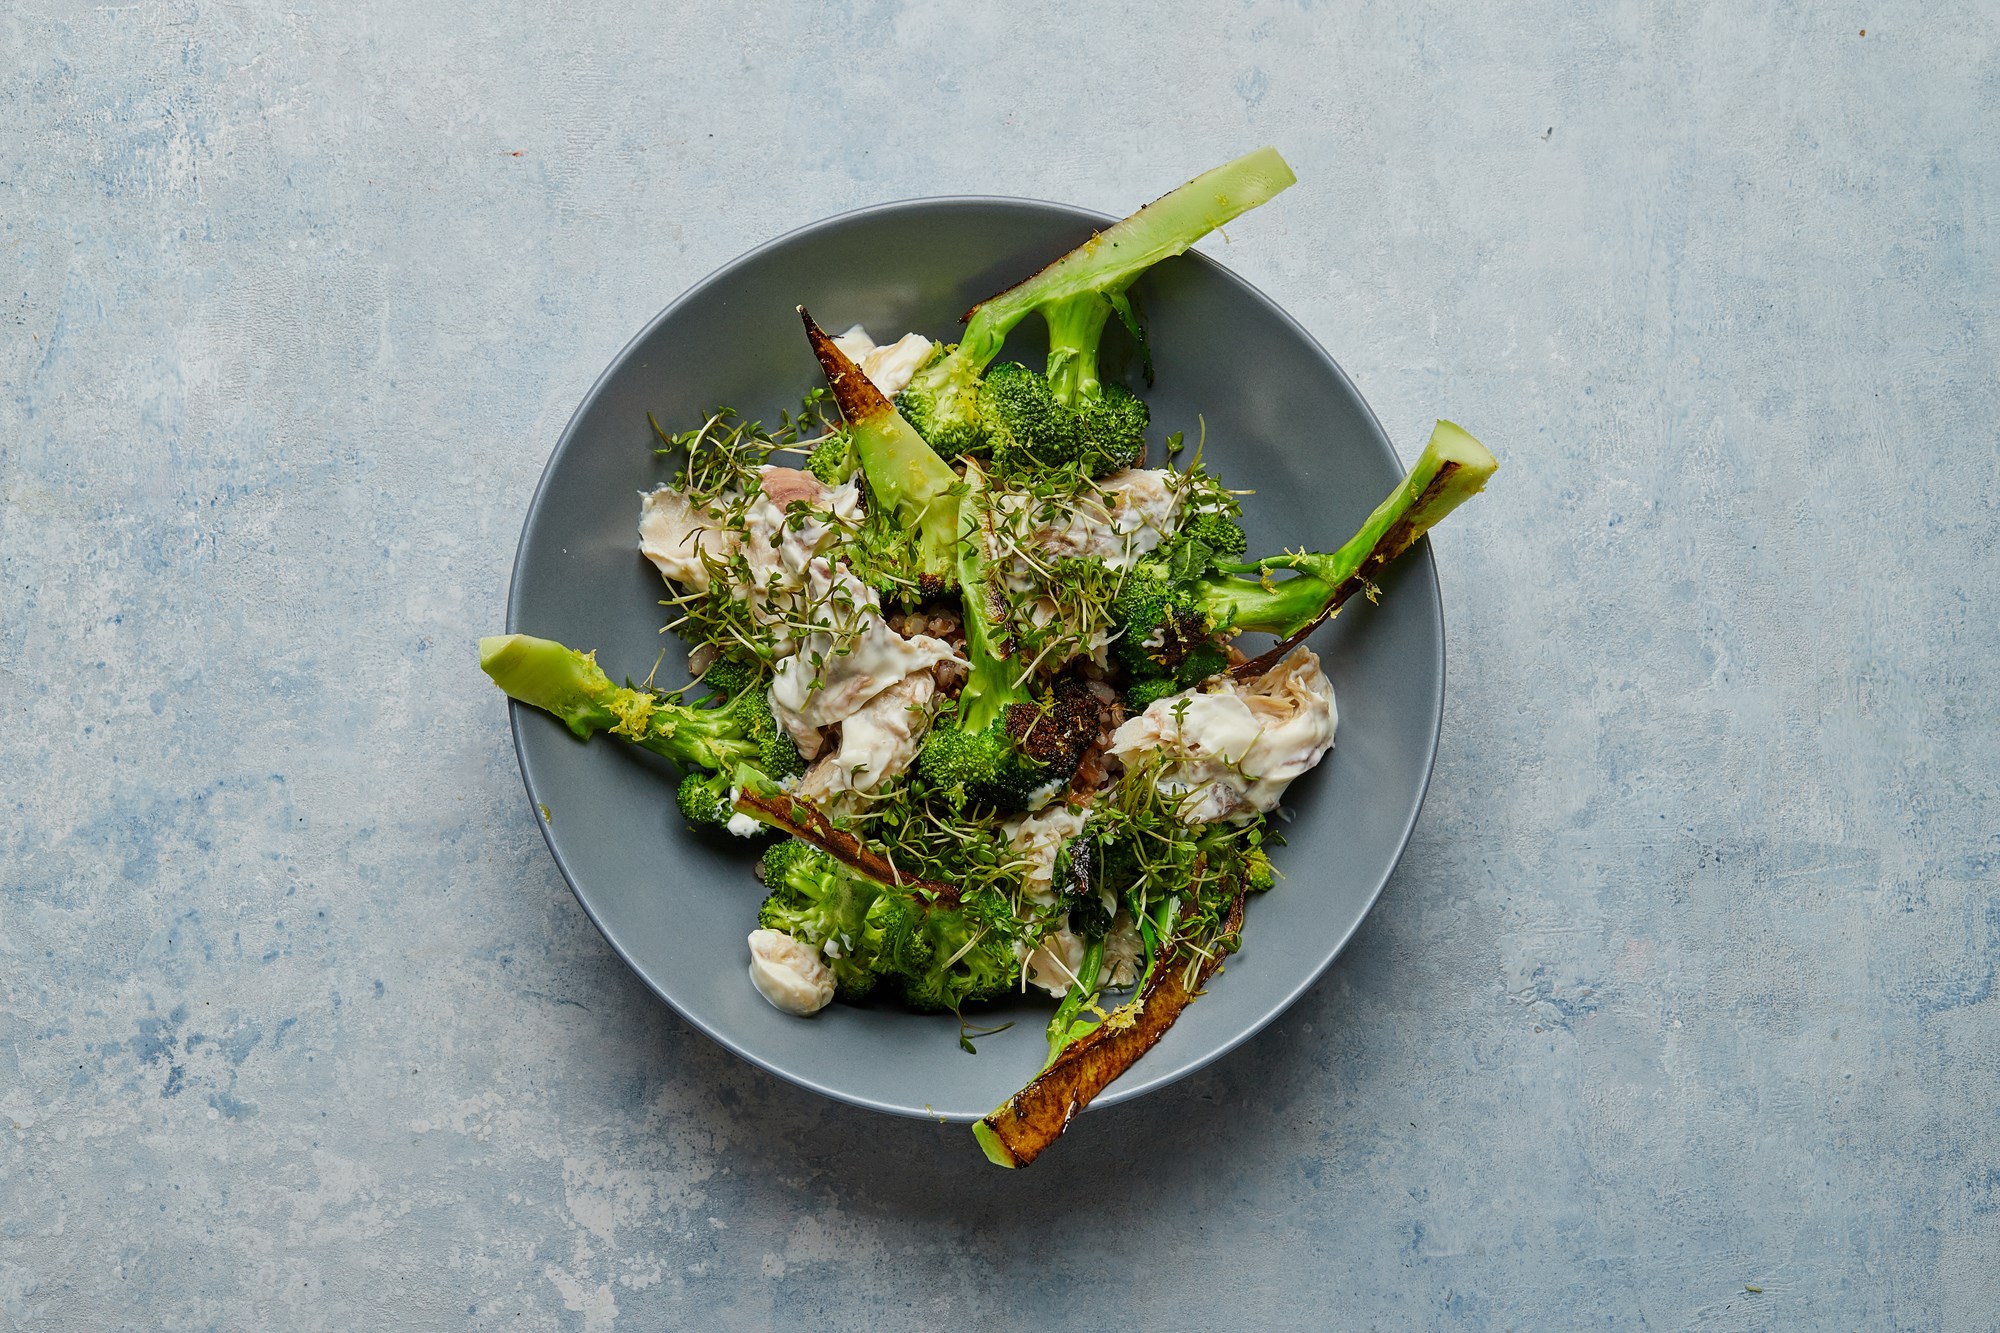 Grov salat med røget makrel, broccoli og kapers